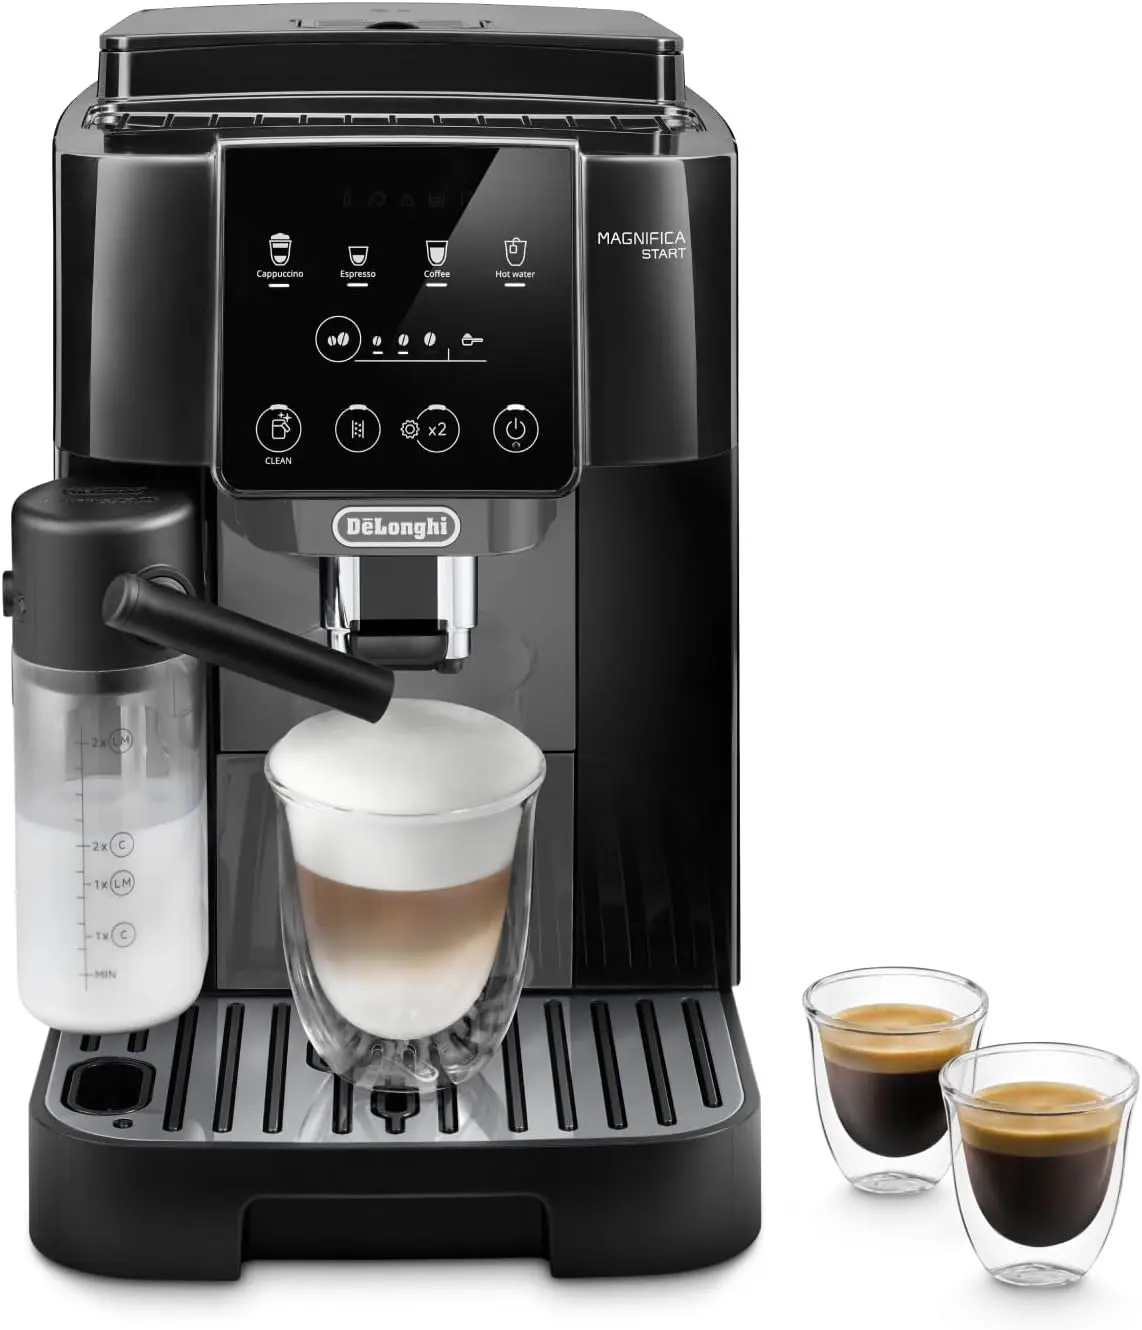 Le 6 migliori macchine da caffè con cappuccinatore